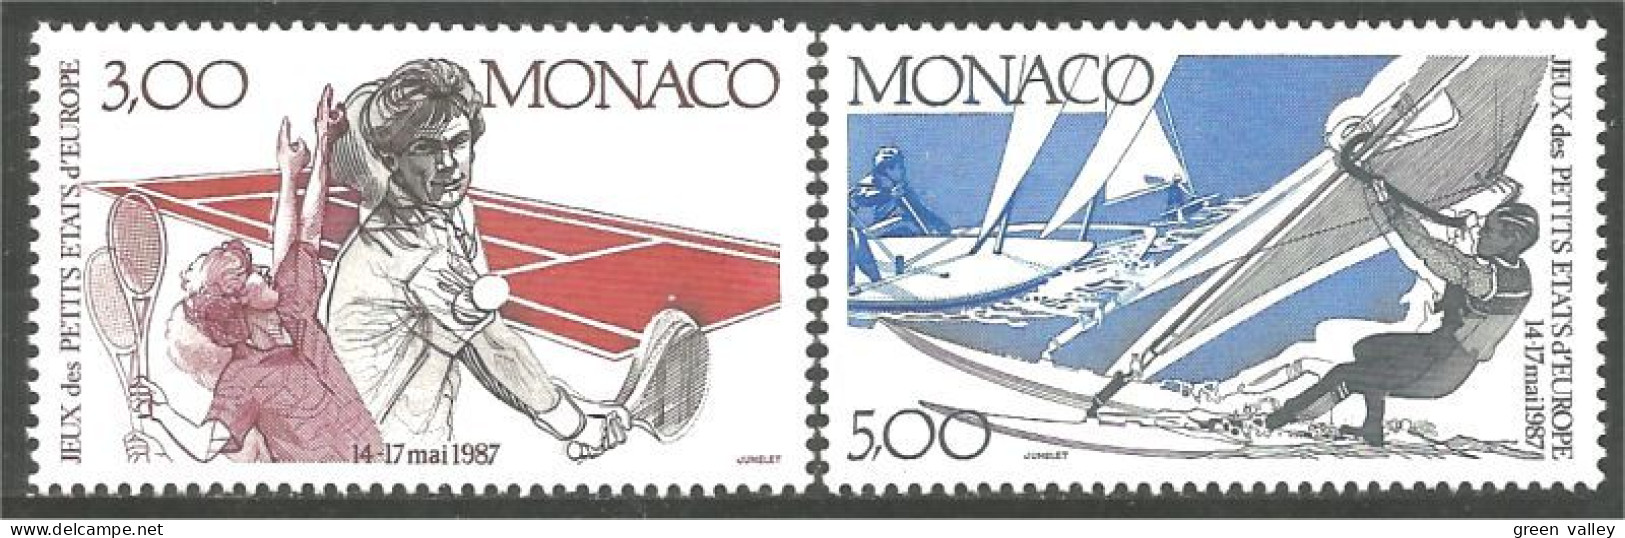 630 Monaco Yv 1579-80 Tennis Planche à Voile Sailboard Sailing Segel Surfbrett MNH ** Neuf SC (MON-812a) - Tennis